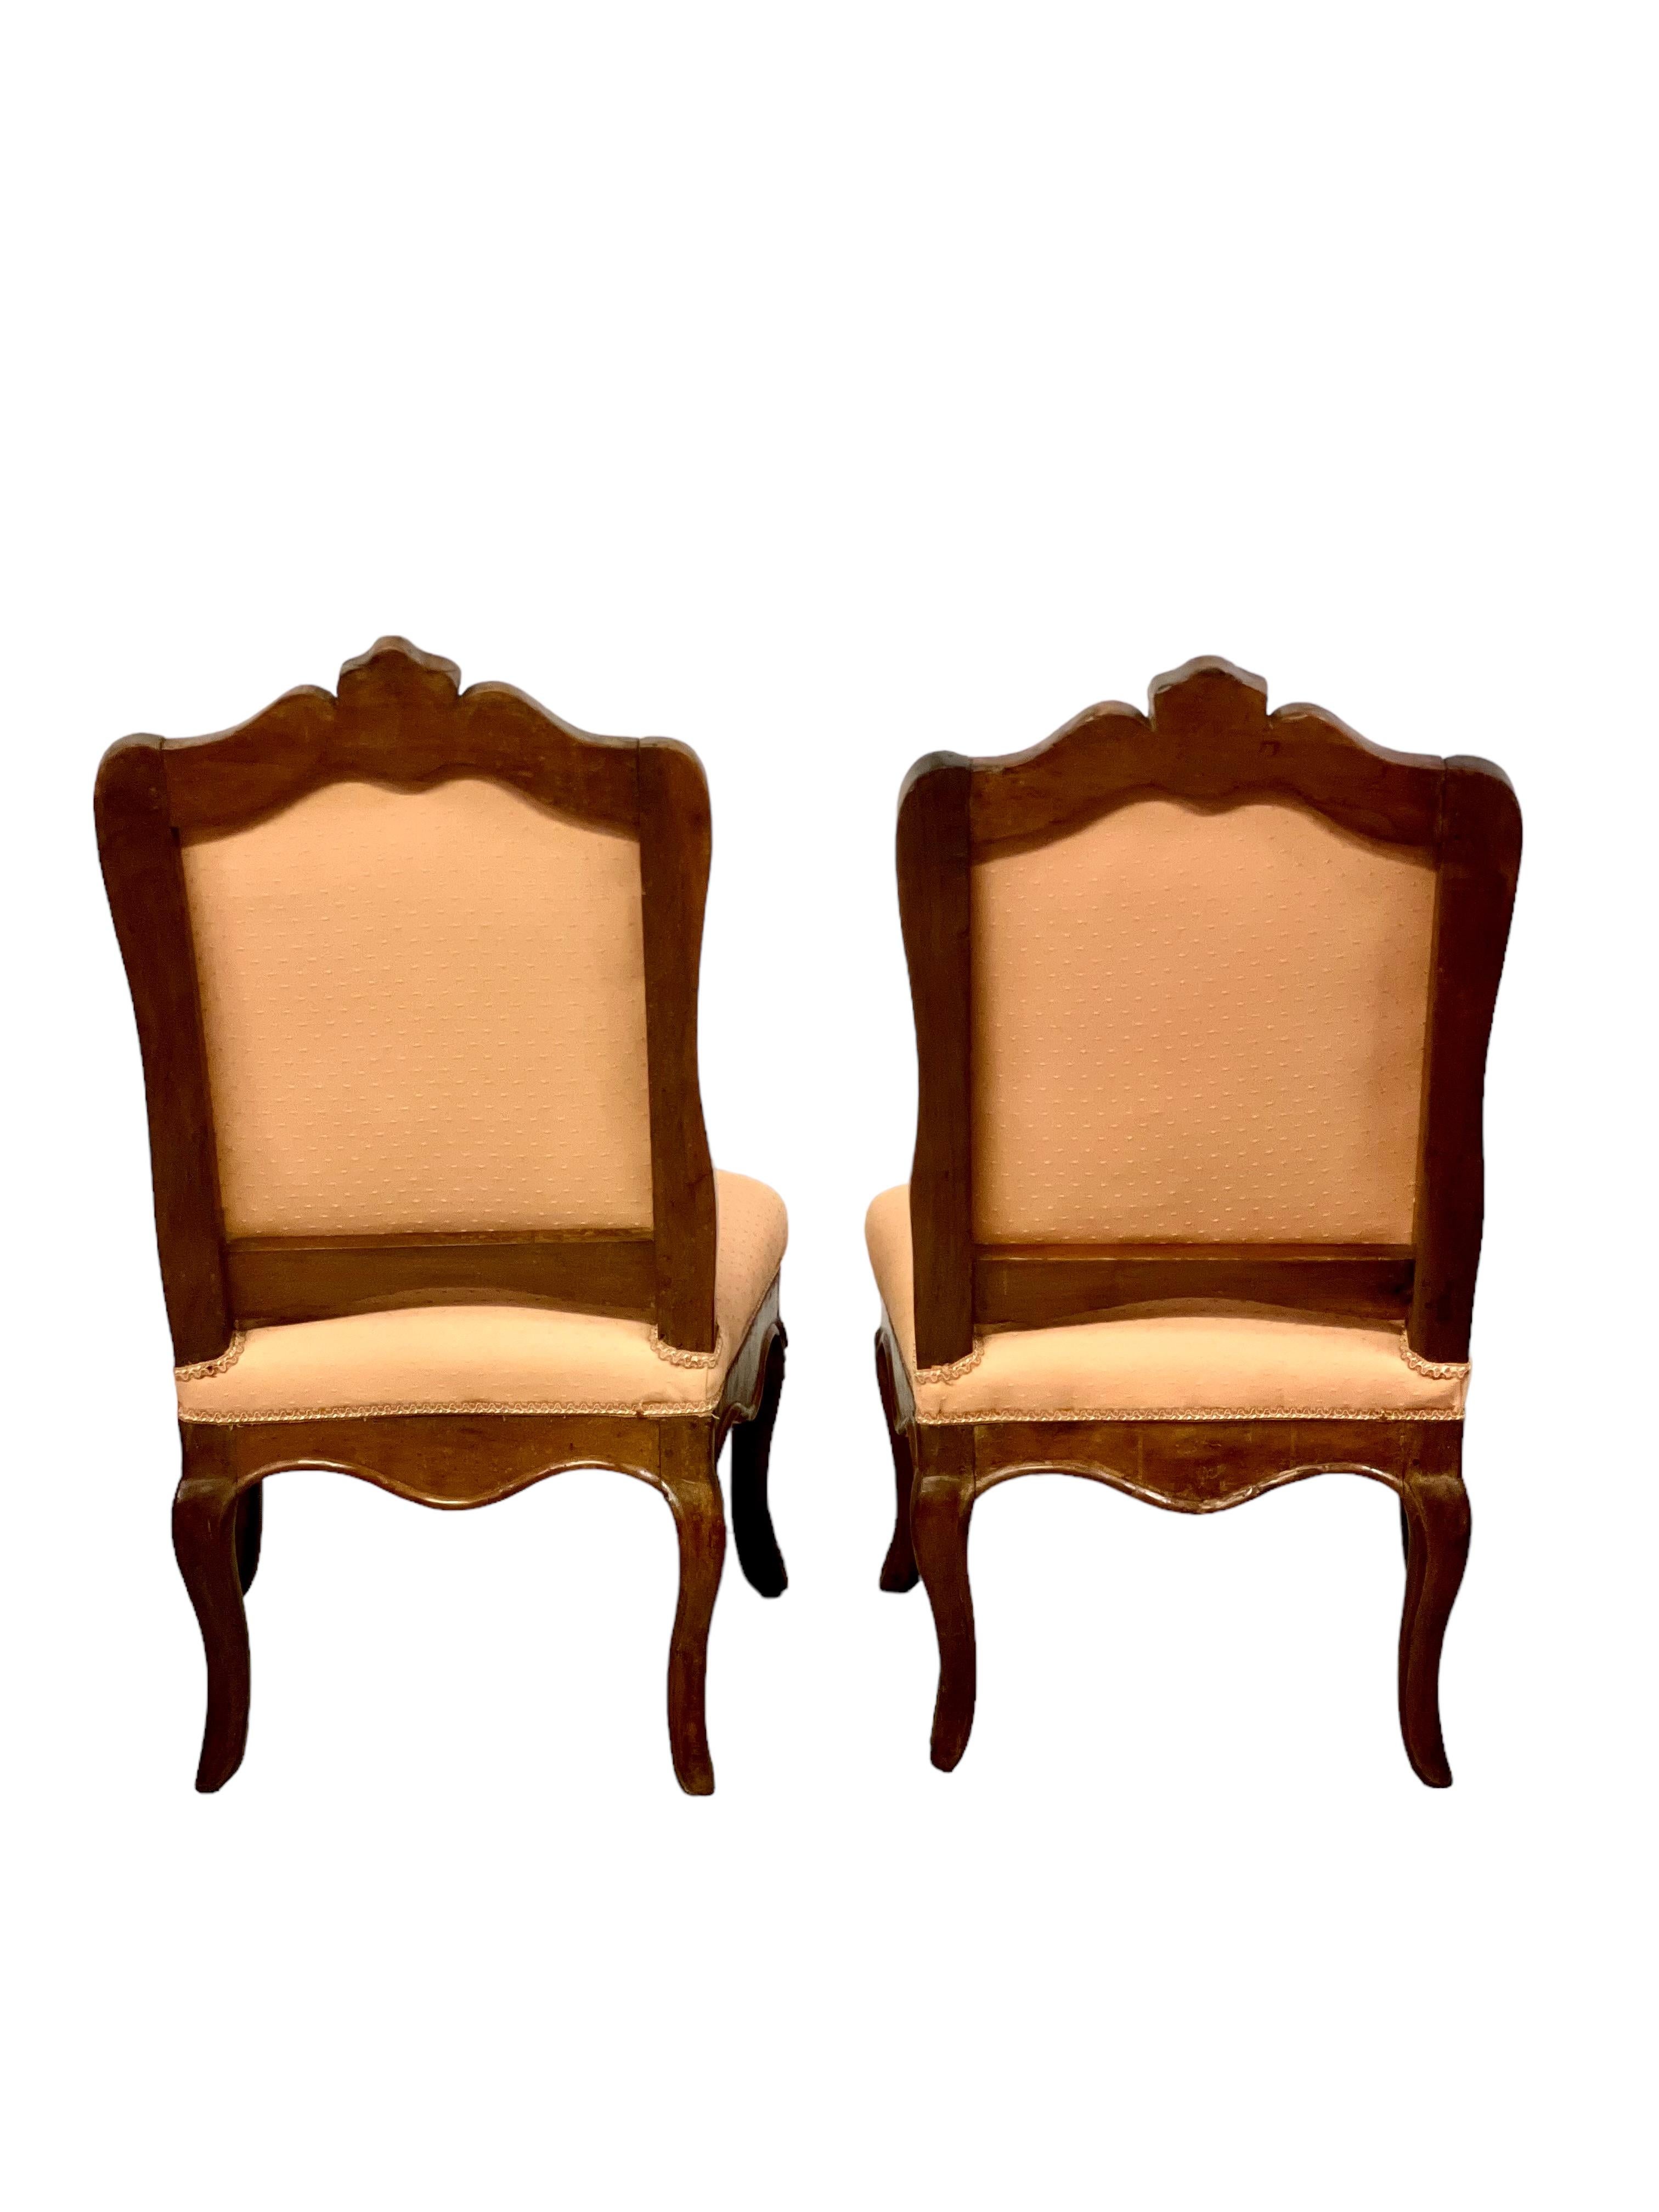 Ein wunderschönes und seltenes Paar geschnitzter Regency-Pantoffelstühle aus Buche, vermutlich aus der Zeit um 1720, die auf vier Kabriole-Beinen stehen. 
Diese äußerst bequemen Stühle verfügen über geformte, gepolsterte Rückenlehnen und Sitze, die